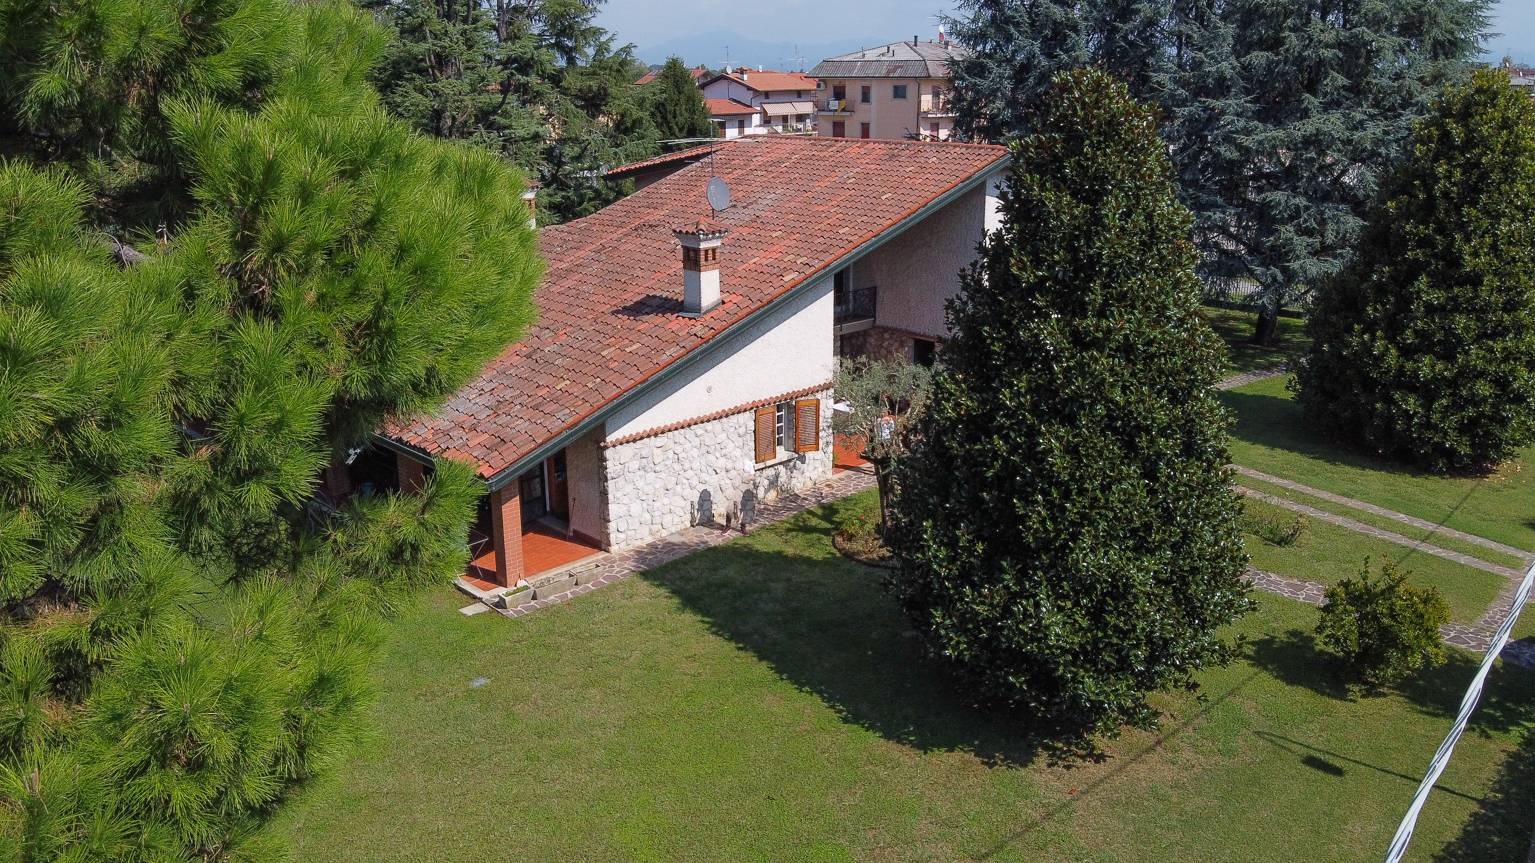 Villa in vendita a Castel Rozzone, 4 locali, prezzo € 490.000 | PortaleAgenzieImmobiliari.it